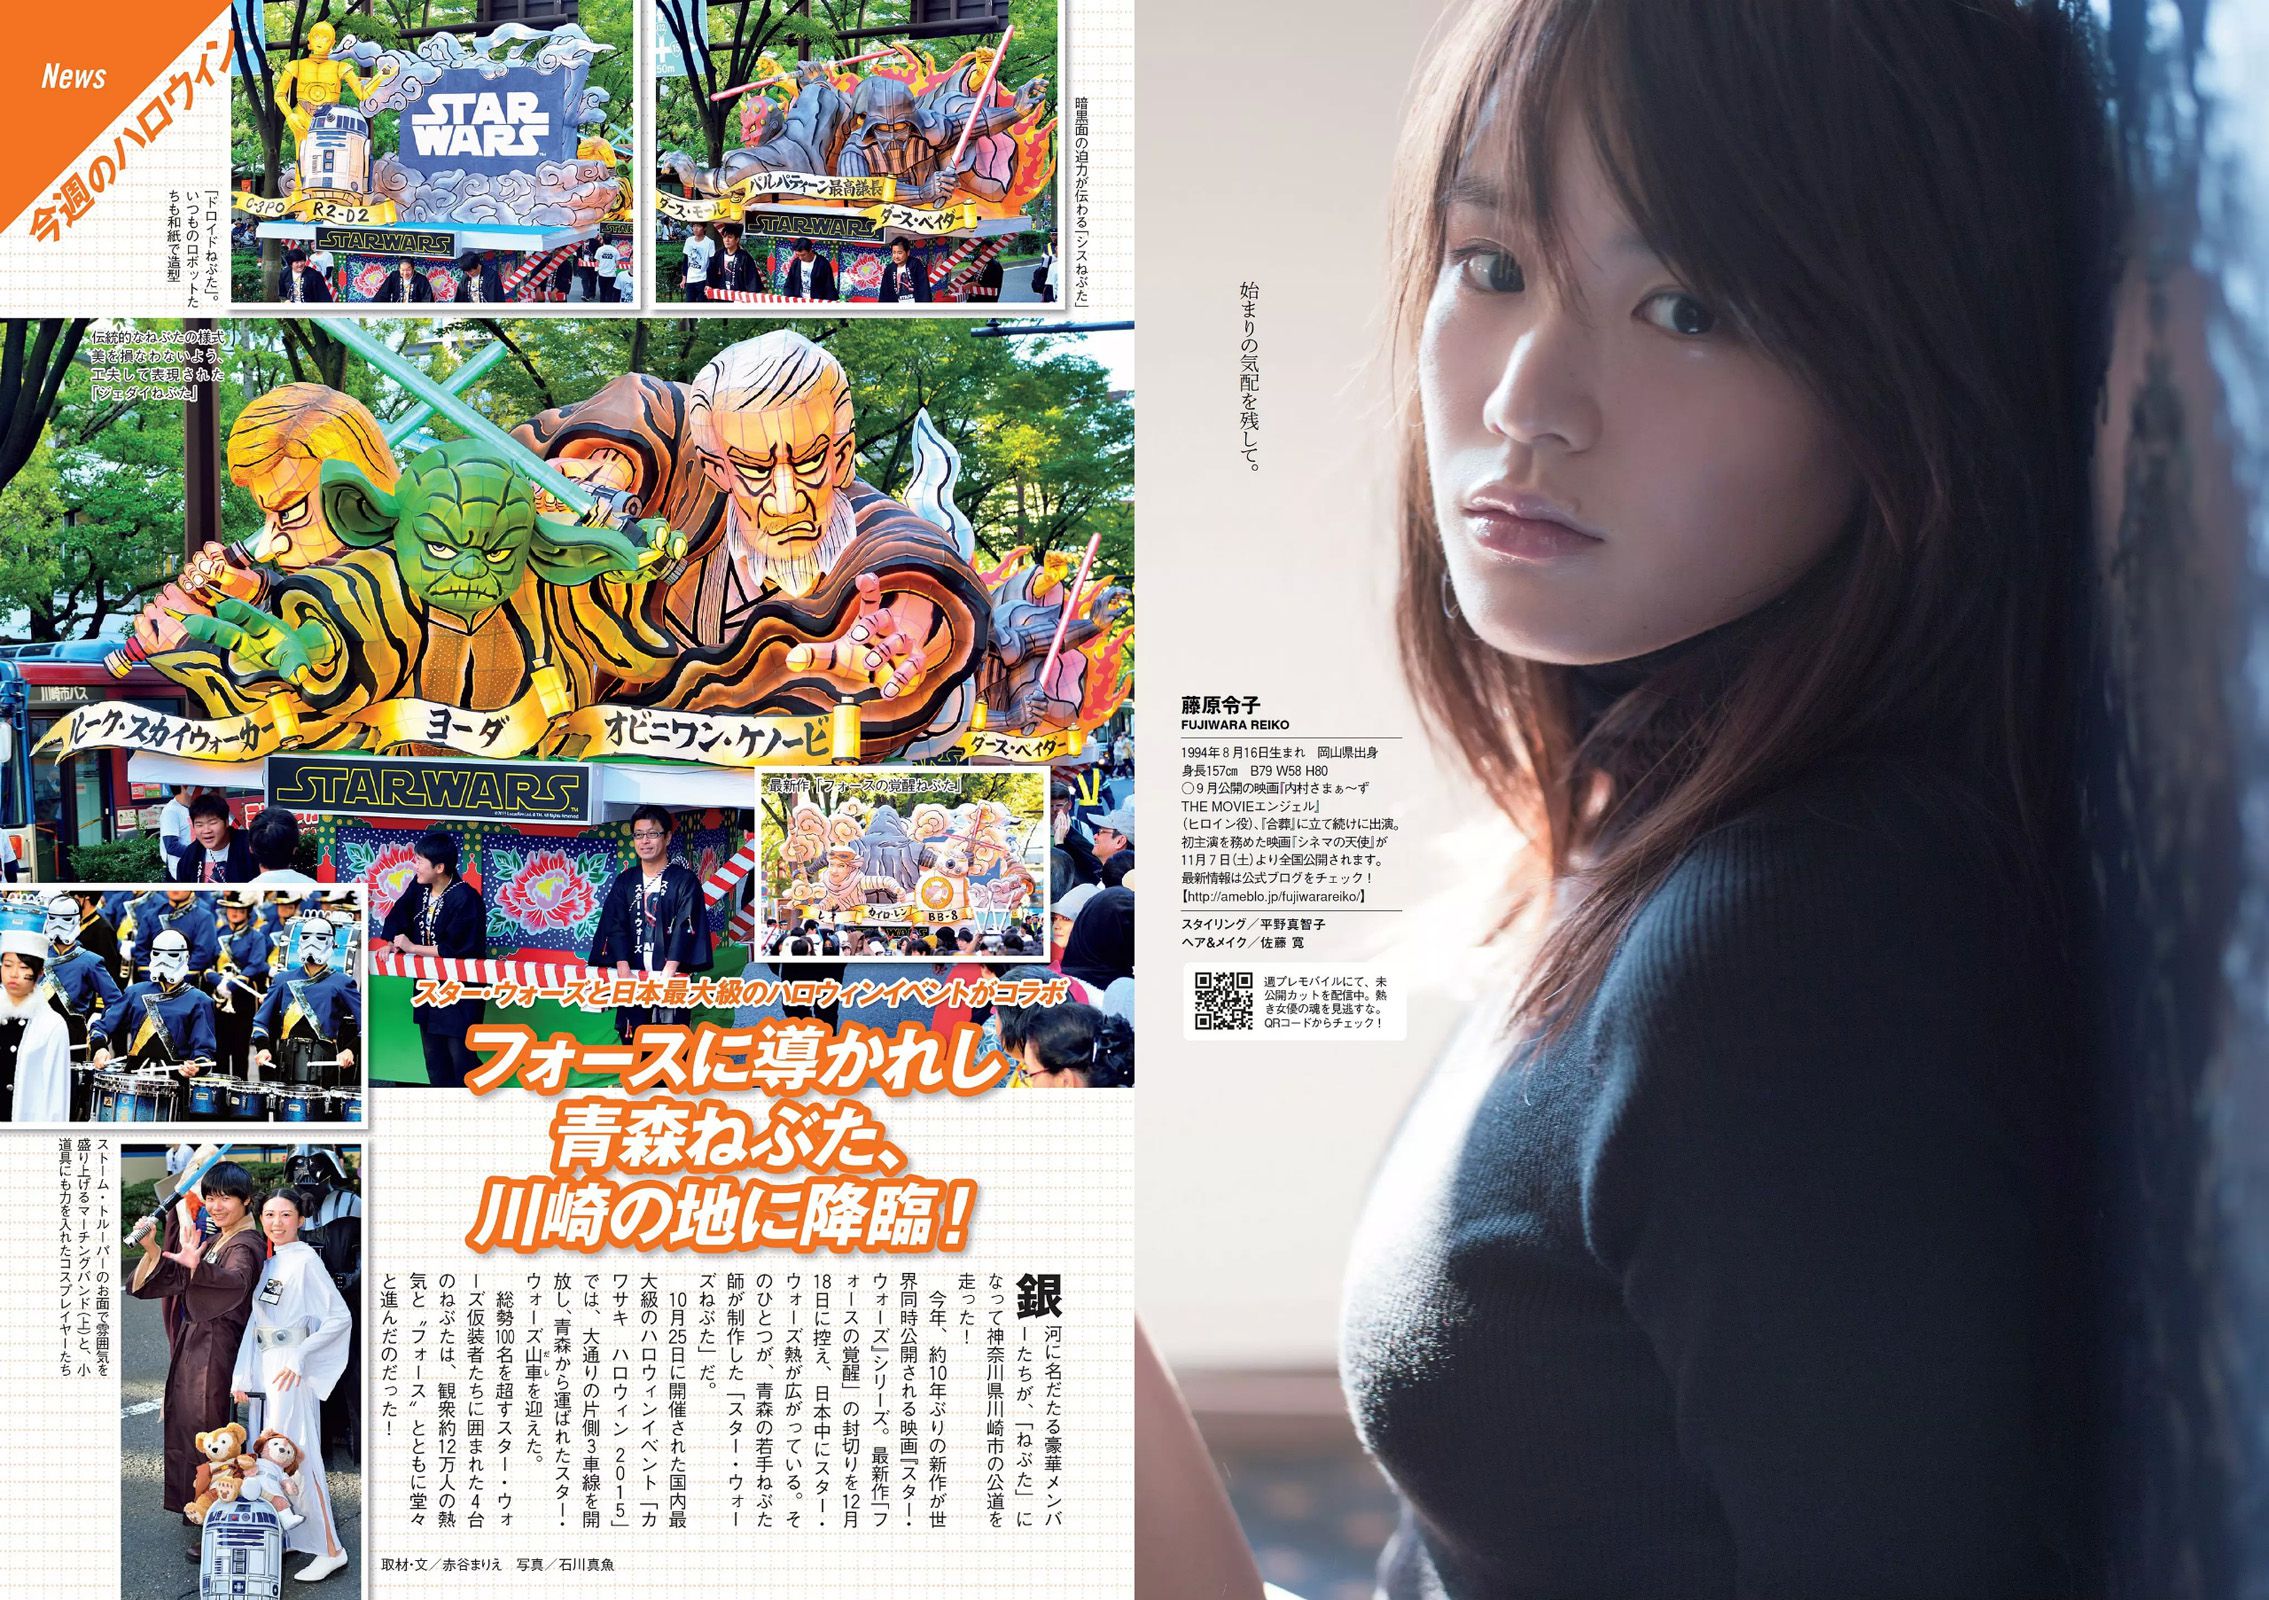 Miwako Kakei Keyakizaka46 Rina Asakawa Reiko Fujiwara Haruka Kodama Kaho Sakaguchi Misa Hayashi Miku Abeno [Weekly Playboy] 2015 No.46 Fotografia Pagina 31 No.0c343c